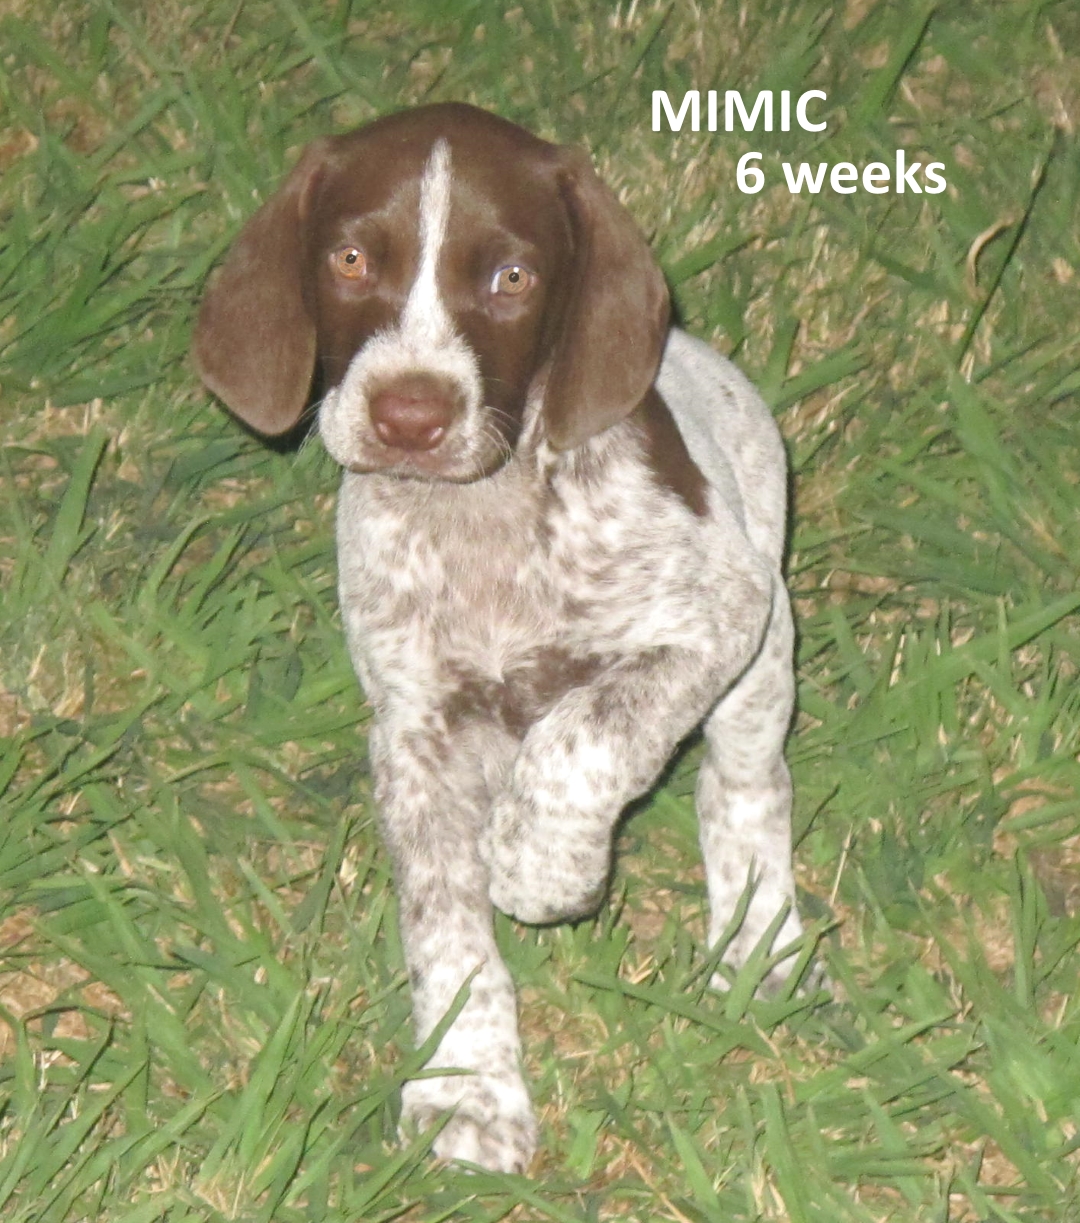 Mimic-6weeks.jpg